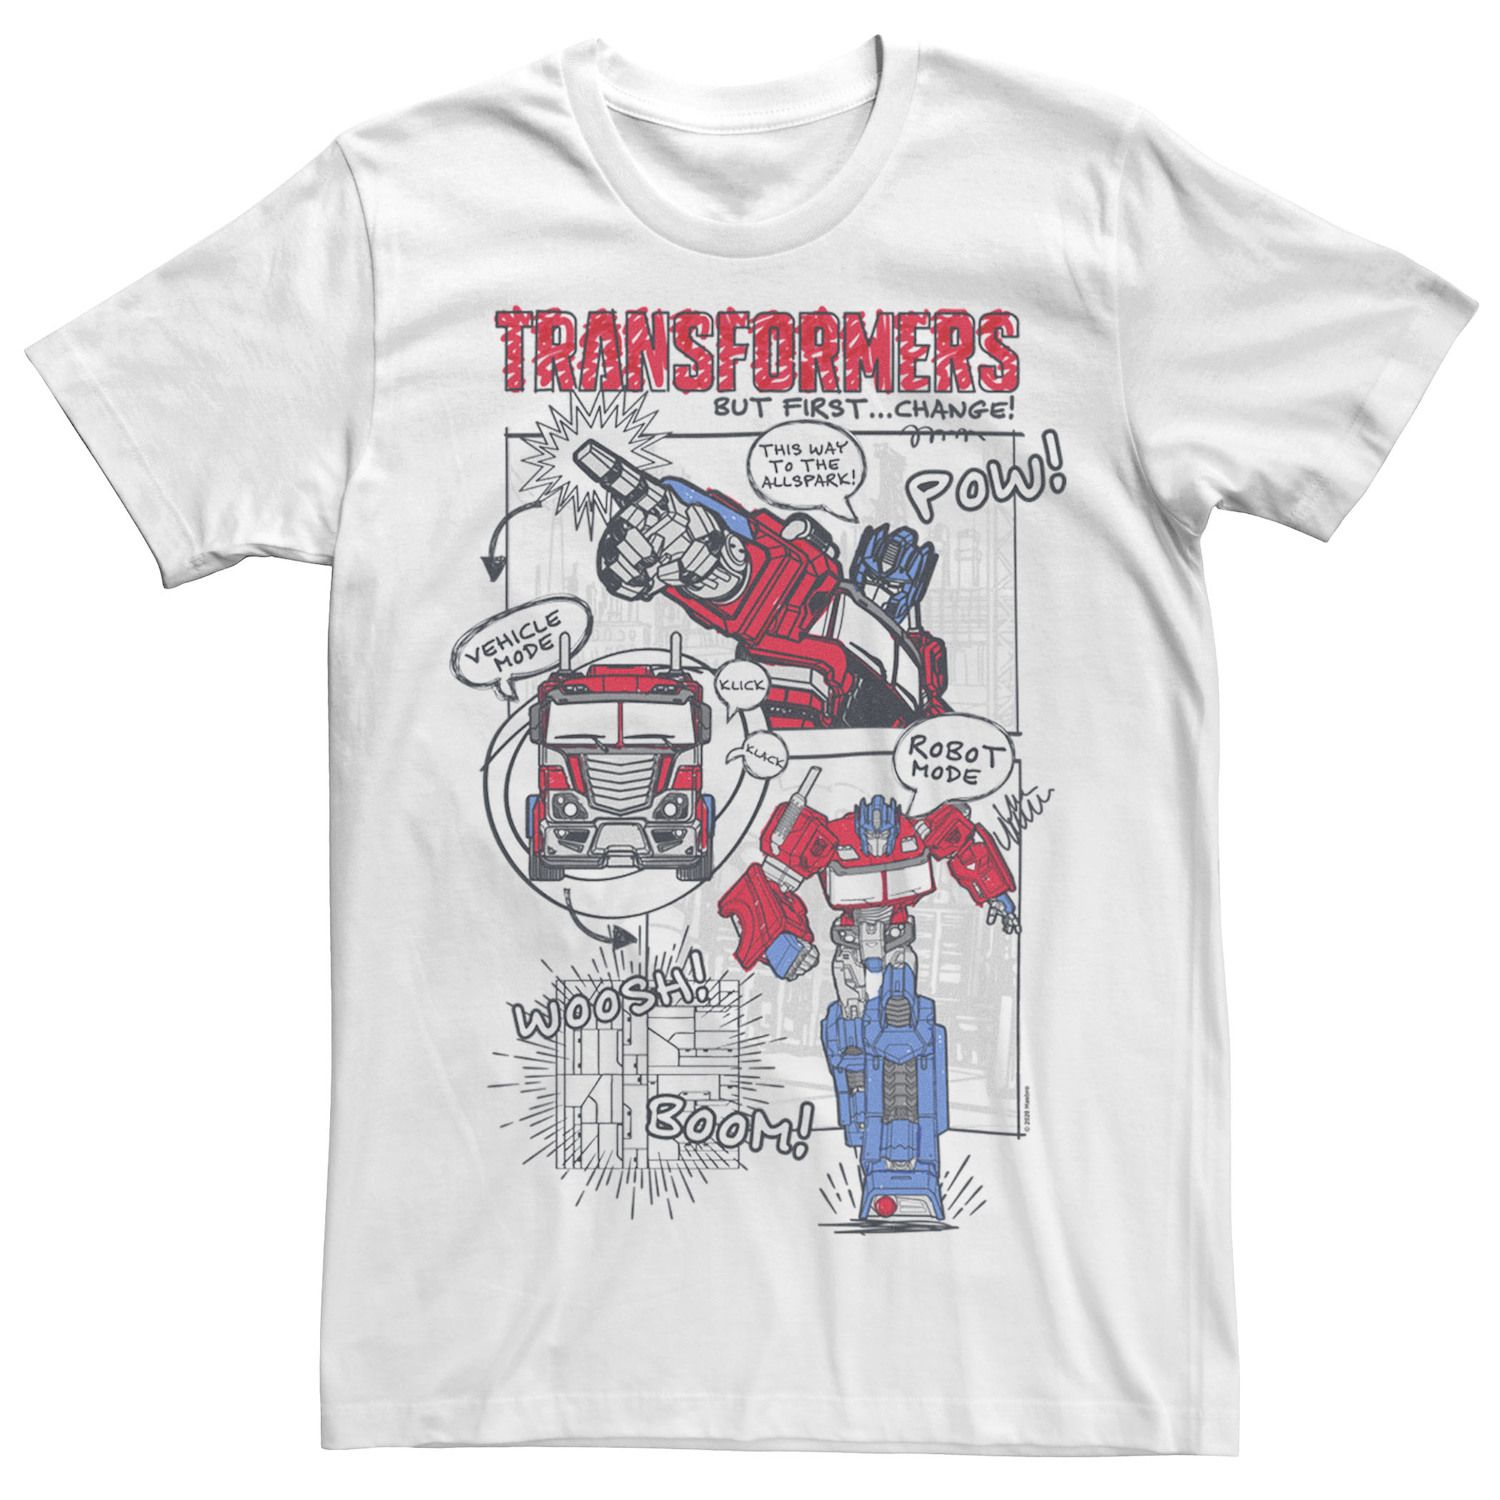 Мужская футболка Transformers Optimus Prime Transformation с комиксами Licensed Character фигурка reaction figure transformers – optimus prime 9 см